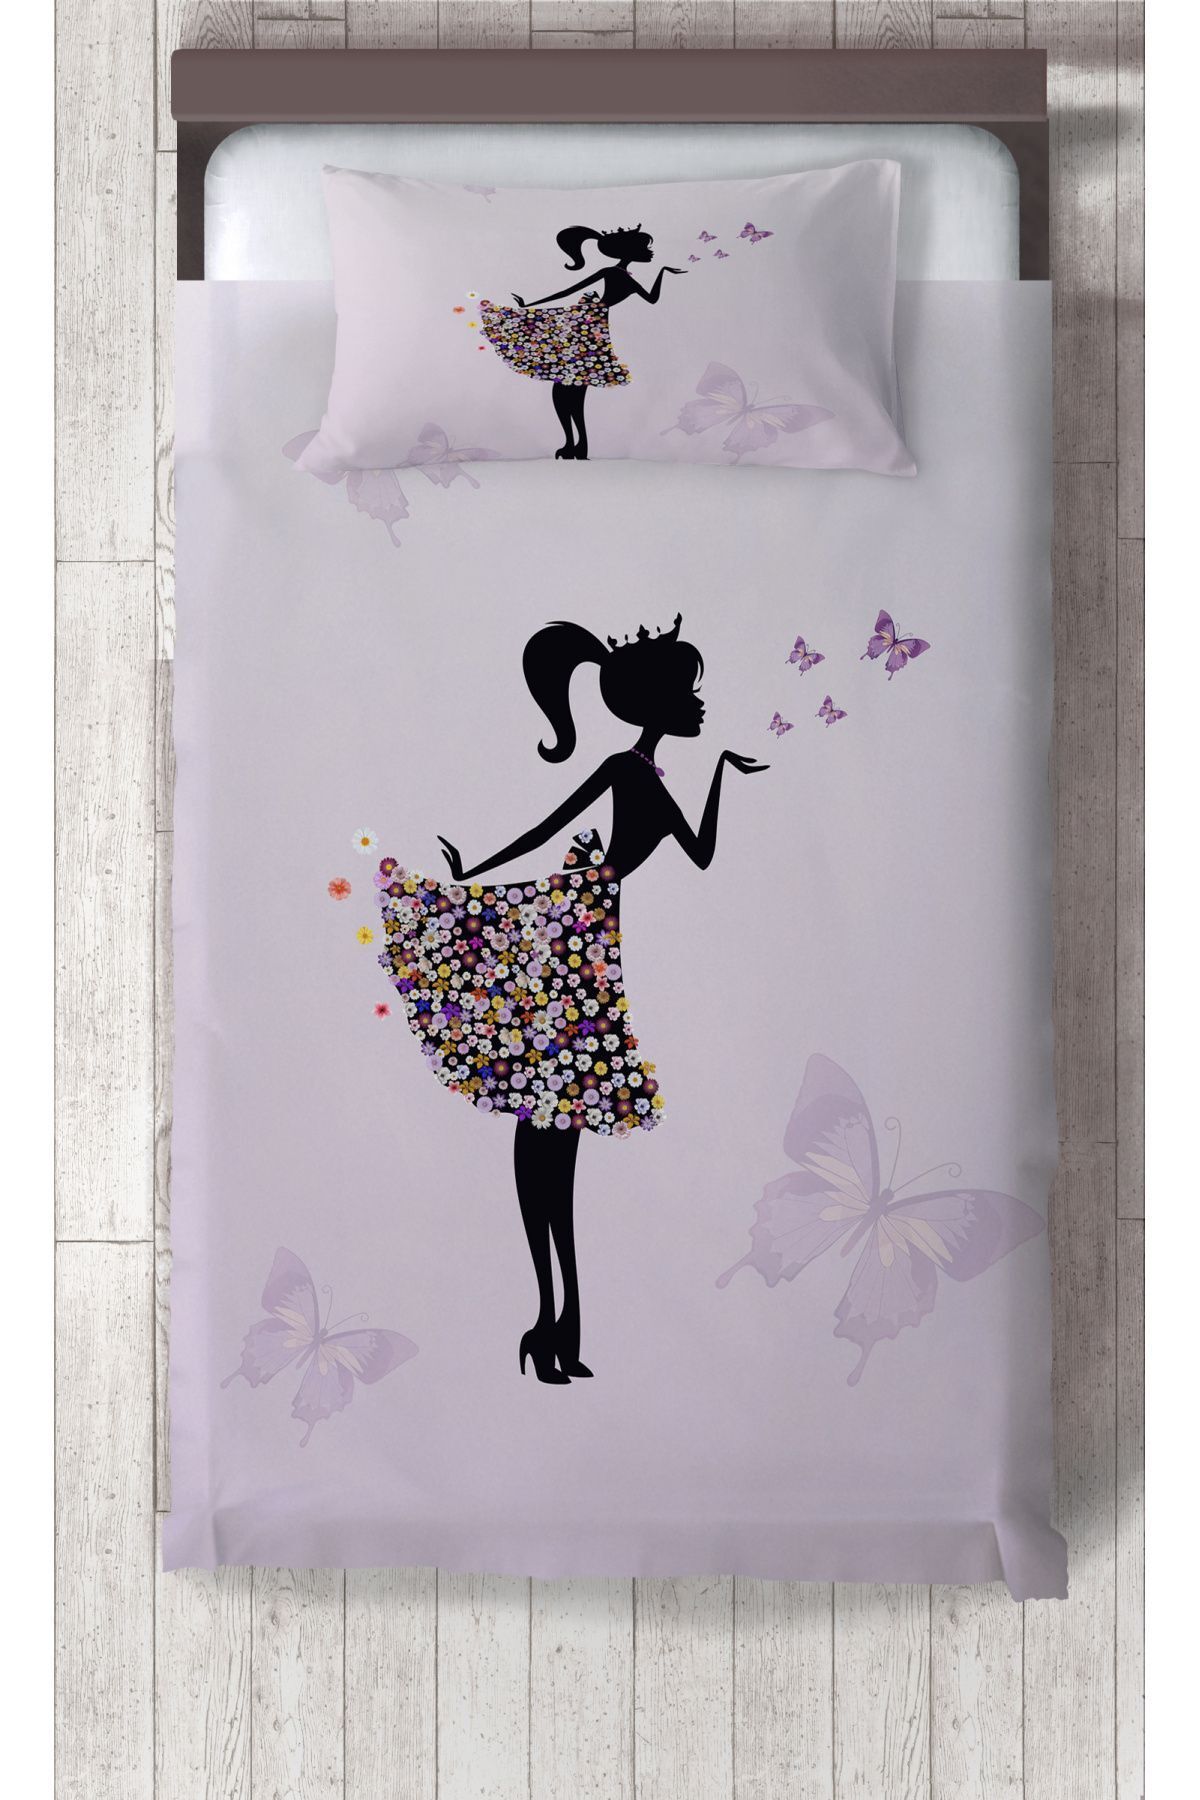 Ceritti Bebek ve Çocuk Odası Kelebekli Prenses Kız Desenli Organik Boyalı, Renkli Yatak Örtüsü Seti Toplam 2